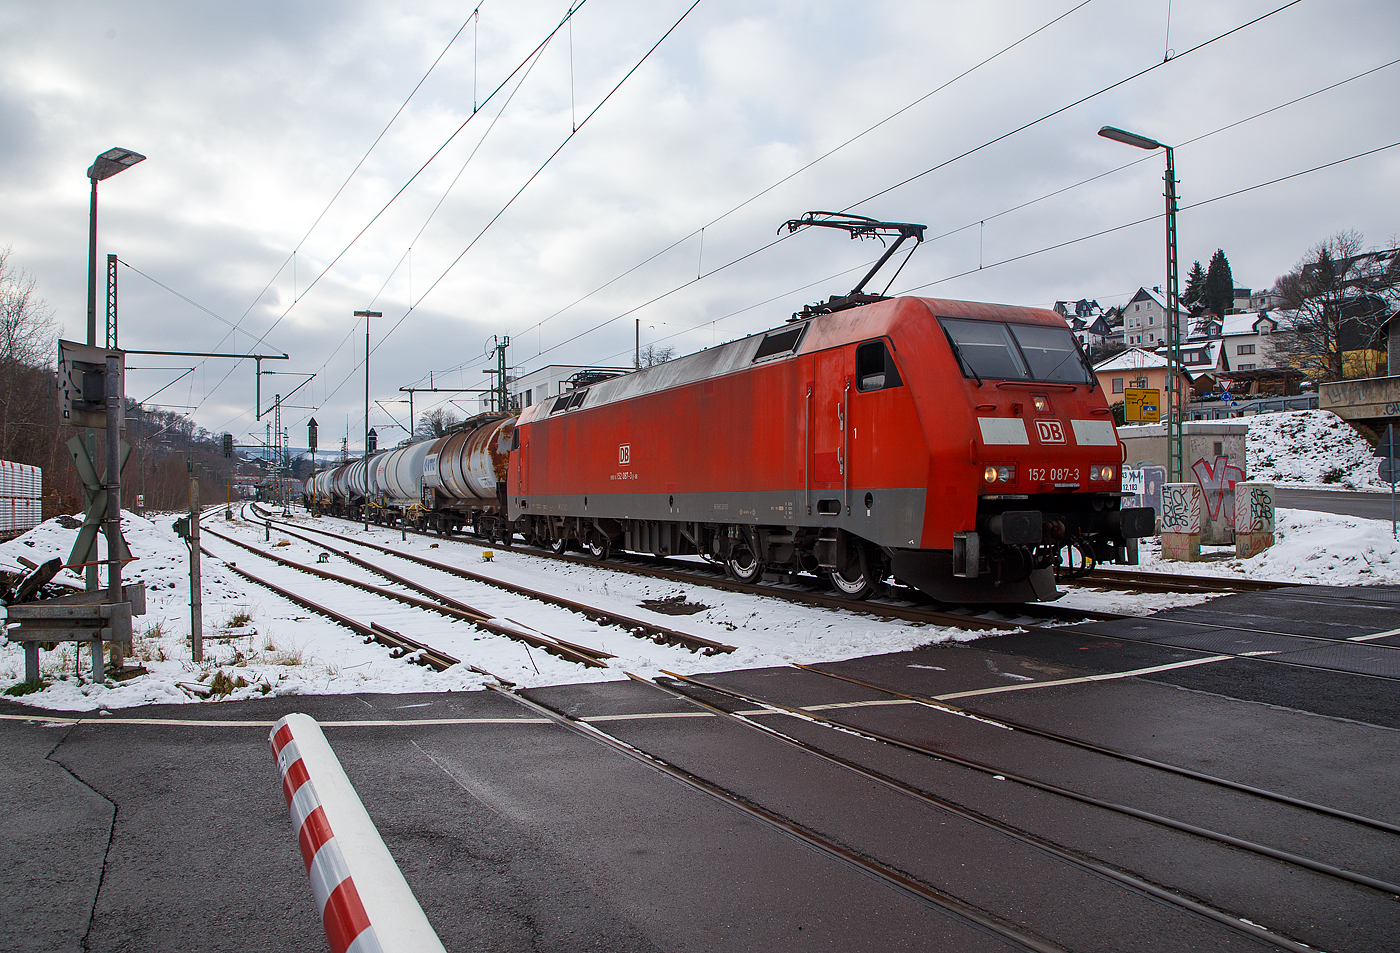 Die 152 087-3 (91 80 6152 087-3 D-DB) der DB Cargo AG fährt am 21.01.2023 mit einem Ethylendichlorid (Gefahrgut-Nr. 336/1184) beladenen Kesselwagenzug durch Niederschelden (Sieg) in Richtung Siegen.

Die Siemens ES64F wurde 2000 noch von Krauss-Maffei in München-Allach unter der Fabriknummer 20214 gebaut.

Die DB Baureihe 152 (Siemens ES64F):
Für den Güterverkehr benötigte die Deutsche Bahn Mitte der 1990er-Jahre dringend neue leistungsstarke Lokomotiven. Als Teil des  großen Beschaffungsprogramms für Triebfahrzeuge  der Deutschen Bahn AG wurde nach einer im Jahr 1993 erfolgten Ausschreibung über drei Lokomotivbaureihen 1995 ein Vertrag zwischen DB AG und Krauss-Maffei Verkehrstechnik GmbH (mit dem Partner Siemens) über die Lieferung von 195 Güterzuglokomotiven der oberen Leistungsklasse der Baureihe 152 geschlossen. Der Vertrag beinhaltet eine Option über 100 weitere Lokomotiven, die in direktem Anschluss an die erste Serie zu liefern wären, d. h. in den Jahren 2001 bis 2003.

Technische Basis des Angebots und des Vertrags war die gemeinsam von Krauss-Maffei und Siemens entwickelte EuroSprinter-Familie. Aufgrund des modularen Konzepts der EuroSprinter-Familie und der positiven Betriebserfahrungen in Spanien, Portugal und in Deutschland konnten die technischen Verhandlungen, ausgehend vom funktionalen Lastenheft der DB AG, sehr zielstrebig und effizient geführt werden.

Bei Bau und Entwicklung der neuen Lokomotiven wurde auf neueste Erkenntnisse der Technik Rücksicht genommen. Der Führerstand verfügt über eine Klimaanlage und sogar ein Getränke-Kühlfach für den Lokomotivführer. Zur besseren Sicht bei Dunkelheit wurden, wie auch bei der Baureihe 101, Fernscheinwerfer eingebaut. Interessant sind bei diesen Lokomotiven auch die außen liegenden Scheibenbremsen. Zum Schutz der Umwelt wurden umweltverträgliche Kühlmittel und Lacke auf Wasserbasis verwendet. Die Baureihe 152 hat sich seitdem sehr gut bewährt und läuft, im Gegensatz zur 101, auch weitgehend störungsfrei.

Die ersten vier Lokomotiven wurden bereits 1997 in Betrieb genommen und mit Zulassung des Eisenbahn-Bundesamtes (EBA) geliefert. Ab 1998 lief die Serienlieferung planmäßig. Die ersten zehn Lokomotiven wurden seit dem Fahrplanwechsel im Mai 1998 in einem zehntägigen Umlauf Padborg - Basel eingebunden. Sie zeigten bisher keine Auffälligkeiten und arbeiten zur Zufriedenheit des Betriebes.

Die Abnahmefahrten erbrachten die Bestätigung, dass die im Lastenheft geforderte Leistungsfähigkeit in den vollen Umfang realisiert wurde. Anlässlich einer Vorführfahrt in Österreich wurde die Leistung sogar auf 7 MW gesteigert. Teilweise wurden schwere Güterzüge mit nur drei Motoren gefahren und in keinem der Fälle wurden die thermischen Grenzwerte der Bauteile erreicht. Bei einer Vorführfahrt durch die Schweiz nach Italien wurde ein 3.200-t-Tonerde-Zug mit über 640 kN Anfahrzugkraft in Doppeltraktion ruckfrei angefahren. Damit konnten die bei der Leistungsauslegung eingebauten Reserven wirkungsvoll nachgewiesen werden.

Die BR 152 ging in den Lokomotivbestand von der DB Cargo AG (zeitweise unter Railion bzw. DB Schenker Rail firmiert) ein und sollte dort in erster Linie die sechsachsigen Lokomotiven der BR 150 bzw. 151 ersetzen. Die Lokomotive kann aber auch im Personenverkehr eingesetzt werden. So ist die BR 152 dank hoher Leistung und Zugkraft z.B. sehr gut für schwere Doppelstockzüge im Wendezugbetrieb geeignet.

Zur Auslieferung aller bestellten 195 Stück der 152er kam es allerdings nicht, da wegen einer geringfügigen Überschreitung der Achslasten bekam die neue Baureihe bei der Österreichischen Bundesbahn (ÖBB) keine Zulassung. Man musste handeln. Die neuen Lokomotiven wurden dringend für den Güterverkehr nach Österreichisch benötigt, für eine weitere Neuentwicklung waren weder Zeit noch Geld vorhanden. So wurde die Bestellung über die letzten 25 Stück der BR152 storniert und in die Zweisystemloks Siemens ES64U2 (baugleich mit ÖBB Reihe 1116 - Zweisystemloks „Taurus“) umgewandelt. Diese Lokomotiven wurden im Jahr 2001 ausgeliefert und sind seitdem als Baureihe 182 bei der DB Cargo AG im Dienst.

Konstruktion:
Die Baureihe basiert auf dem von Siemens konstruierten Prototyp ES64P (127 001). Da jedoch klar war, dass die Maschinen doch ausschließlich im Güterverkehr eingesetzt werden sollten und eine Höchstgeschwindigkeit von 140 km/h als ausreichend angesehen wurde, konnte auf die Verwendung von voll abgefederten Fahrmotoren verzichtet und auf den wesentlich einfacheren und preisgünstigeren Tatzlager-Antrieb zurückgegriffen werden. Dieser gilt durch die Verwendung moderner Drehstrommotoren bei niedrigen Geschwindigkeiten als relativ verschleißarm. Die Kraftübertragung zwischen Wagenkasten und Drehgestellen erfolgt in Maffei-Tradition über kräftig dimensionierte und tief herunterreichende Drehzapfen sowie Flexicoilfedern.

Ansonsten entstand eine moderne Maschine mit Drehstromasynchron-Fahrmotoren und doppelten innenbelüfteten Scheibenbremsen. Eine teilredundante Ausführung von hochbeanspruchten Teilen im Antriebsstrang trägt ganz wesentlich zur hohen Zuverlässigkeit und Verfügbarkeit der Baureihe bei.

Der Haupttransformator ist unterflur zwischen den Drehgestellen angeordnet. Jedes Drehgestell verfügt über eine autarke elektrische Ausrüstung, bestehend aus drei Eingangsgleichrichtern in rückspeisefähiger Vierquadranten-Bauweise, Gleichspannungszwischenkreis und zwei Wechselrichtern (einer je Motor). Dadurch wird erreicht, dass bei Ausfall einer Komponente des Antriebsstrangs nicht das gesamte Drehgestell ausfällt, sondern sich lediglich die verfügbare Zugkraft reduziert. Als Leistungshalbleiter kommen wassergekühlte GTO-Thyristoren zum Einsatz. Die Bremskraft der elektrodynamischen Nutzbremse beträgt 150 kN im Bereich zwischen 10 km/h und 140 km/h.

Die Lokomotiven sind mit Zugsammelschiene für die Energieversorgung von Reisezügen sowie Wendezugsteuerung und Notbremsüberbrückung ausgerüstet, so dass sie auch im schweren Personenzugdienst eingesetzt werden können. Durch die Aufteilung der DB AG und Zuordnung der Loks zum Geschäftsbereich Güterverkehr der DB wurde davon seit Ende der 1990er Jahre kein Gebrauch mehr gemacht.

Der Maschinenraum wird von einem beide Führerstände verbindenden Mittelgang durchzogen. Beidseitig sind an den Außenwänden des Lokkastens die elektrische Ausrüstung, die Druckluft- und Bremsgeräte sowie die umfangreichen Kühleinrichtungen angeordnet. Alle Aggregate sind in Form von separaten, austauschbaren Modulen ausgeführt, die von oben in das Fahrzeug eingebracht werden. Dabei wurde auf möglichst kurze Verbindungen, insbesondere bei den Hauptstromleitungen geachtet. Die Steuerleitungen und die Verrohrung sind in Kanälen unter dem Mittelgang verlegt. Die Steuerungs- und Überwachungsgeräte sind an den beiden Enden des Maschinenraums konzentriert.

Die Führerstandsräume sind klimatisiert, wärme- und schallisoliert und verfügen über ein recht großzügiges Raumangebot. Annehmlichkeiten für den Triebfahrzeugführer sind darüber hinaus ein luftgefederter Sitz und ein Thermofach. Die Lokomotiven sind mit Einheitsführerständen ausgerüstet.

TECHNISCHE DATEN der BR 152 (Siemens ES64F):
Hersteller: Krauss-Maffei bzw. Siemens 
Baujahre: 1996-2001
Gebaute Anzahl: 170
Spurweite: 1.435 mm (Normalspur)
Achsformel: Bo´Bo´
Länge über Puffer: 19.580 mm
Drehzapfenabstand: 9.900 mm
Achsstand im Drehgestell: 3.000 mm
Treibraddurchmesser: 1.250 mm (neu) / 1.170 mm (abgenutzt)
Breite: 3.000 mm
Dienstgewicht: 86,7 t
Achslast: 21,75 t
Höchstgeschwindigkeit: 140 km/h
Dauerleistung: 6.400 kW (8.701 PS)
Anfahrzugkraft: 300 kN
Dauerzugkraft: 250 KN
Fahrmotoren: 4 Stück fremdbelüftete vierpolige Drehstrom-Asynchron-Motoren
Getriebeübersetzung: 3,95:1
Antriebsart: integrierter Tatzlagerantrieb
Stromabnehmer: SSS 87 (Einholm)
Stromsystem: 15 kV, 16 2/3 Hz

Elektrisches Antriebssystem: Wassergekühlte GTO-Stromrichter, 3 netzseitige Eingangsgleichrichter (4QS),
Gleichspannungszwischenkreis, 1 Pulswechselrichter pro Fahrmotor, Einzelachsregelung mit 75% Redundanz-

Steuerungs- und Leittechnik: 2 Zentrale Steuergeräte in SIBAS 32 mit integrierter AFB, ZWG, SIFA und zentraler Diagnose, 1 Farbdisplay und MFA pro Führerstand, LZB 80, Gleit- und Schleuderschutz K-Micro.

Bremsausrüstung: Elektrische Netzbremse, Knorr-Führerbremsventilanlage Typ HSM-MEP, Radscheibenbremse, 4 Federspeicher-Festhaltebremsen
